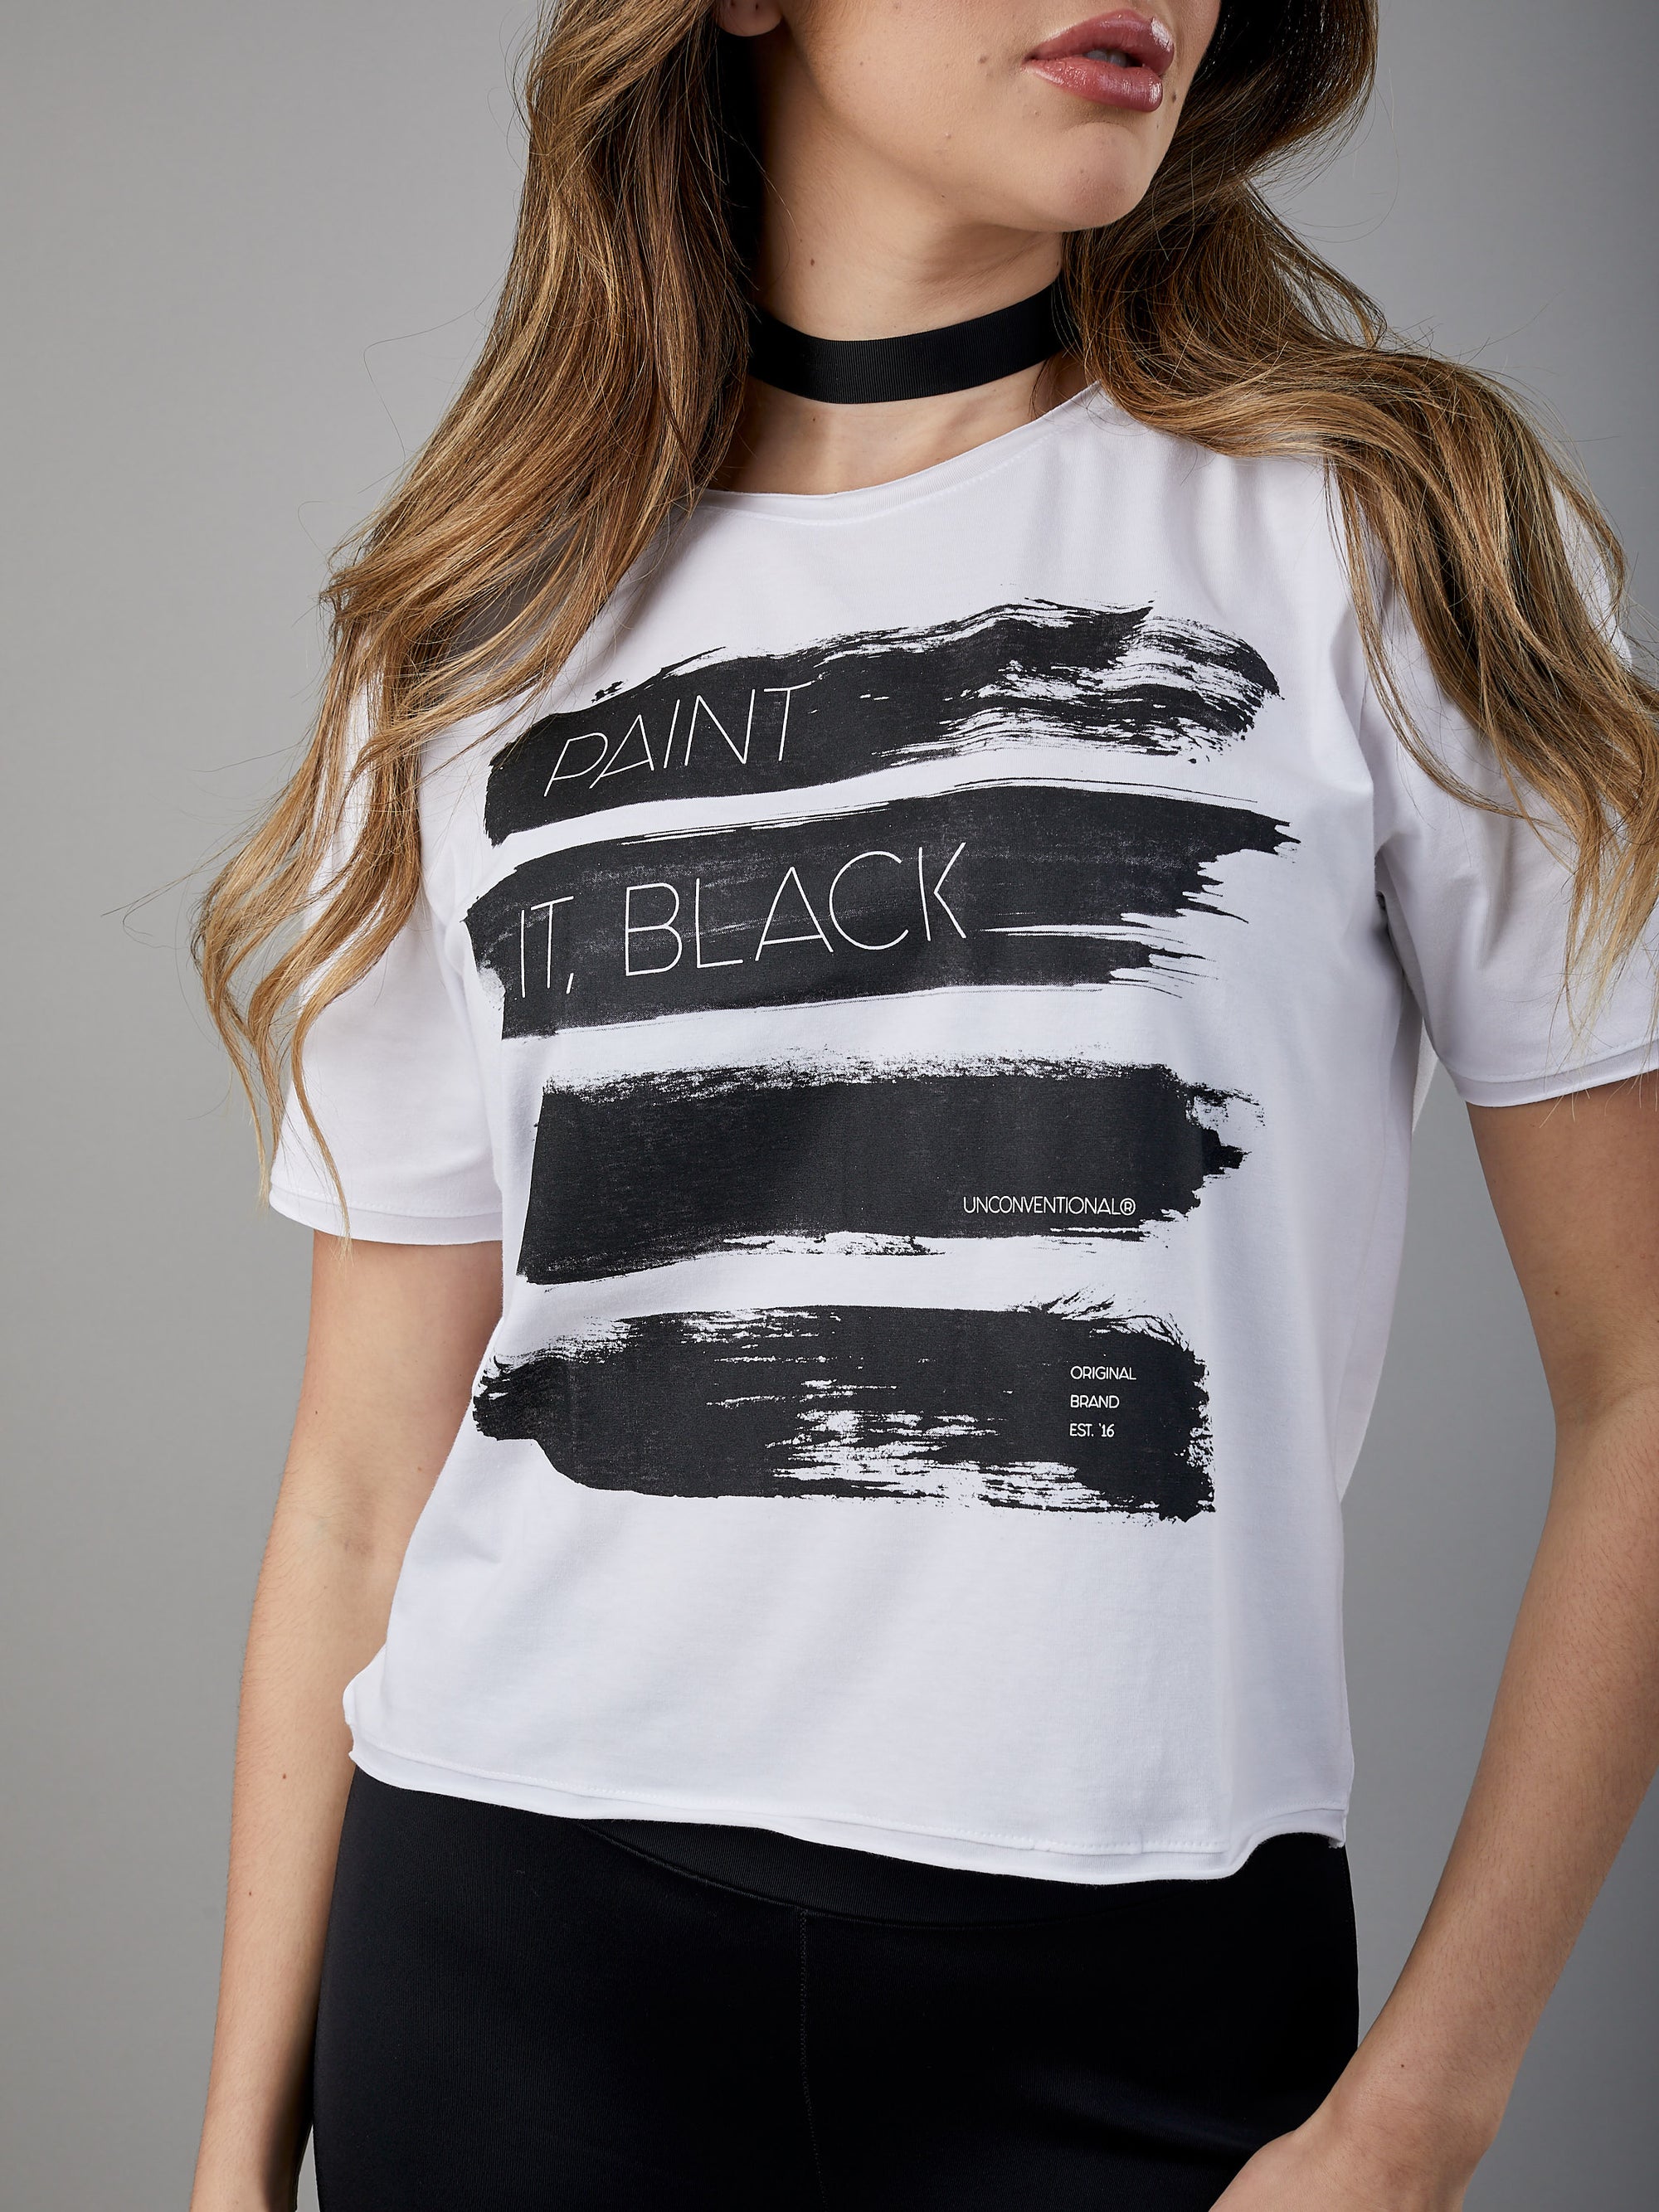 T-shirt Unconventional Paint it, Black em Algodão Egípcio